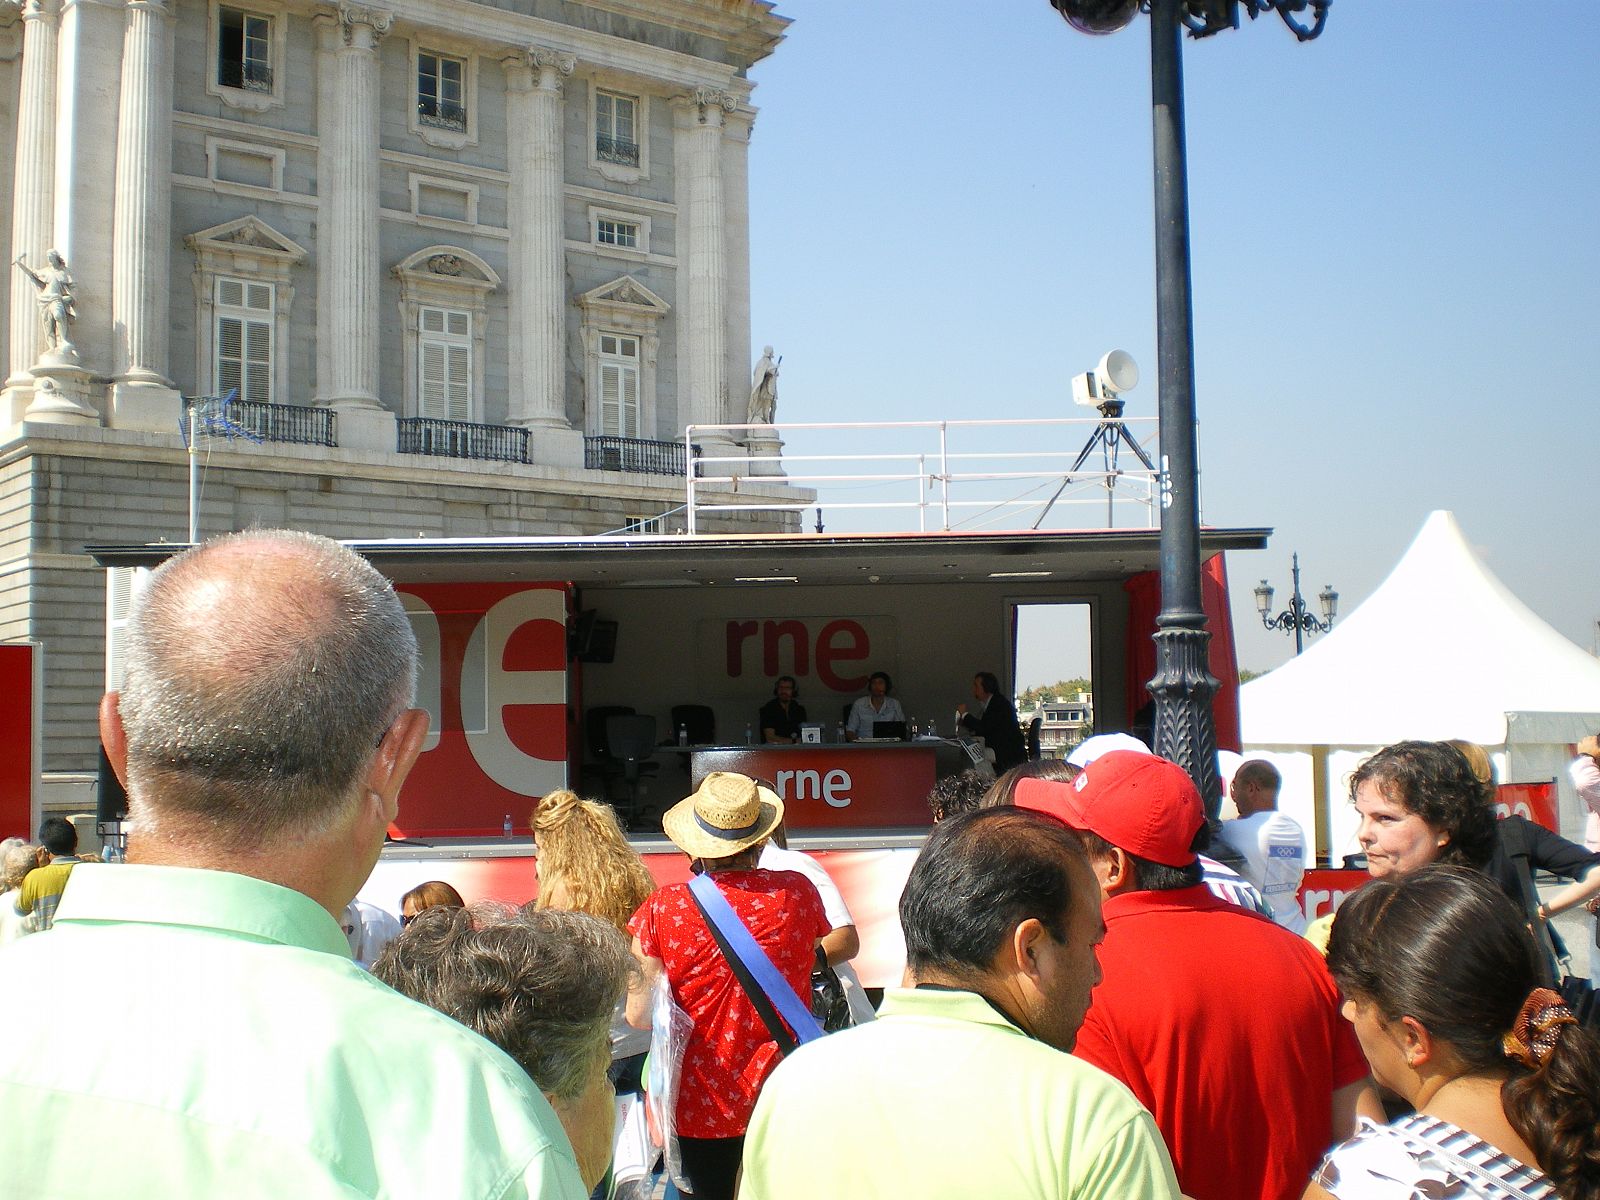 El estudio móvil de RNE, frente al Palacio Real de Madrid en un reciente encuentro con los oyentes.